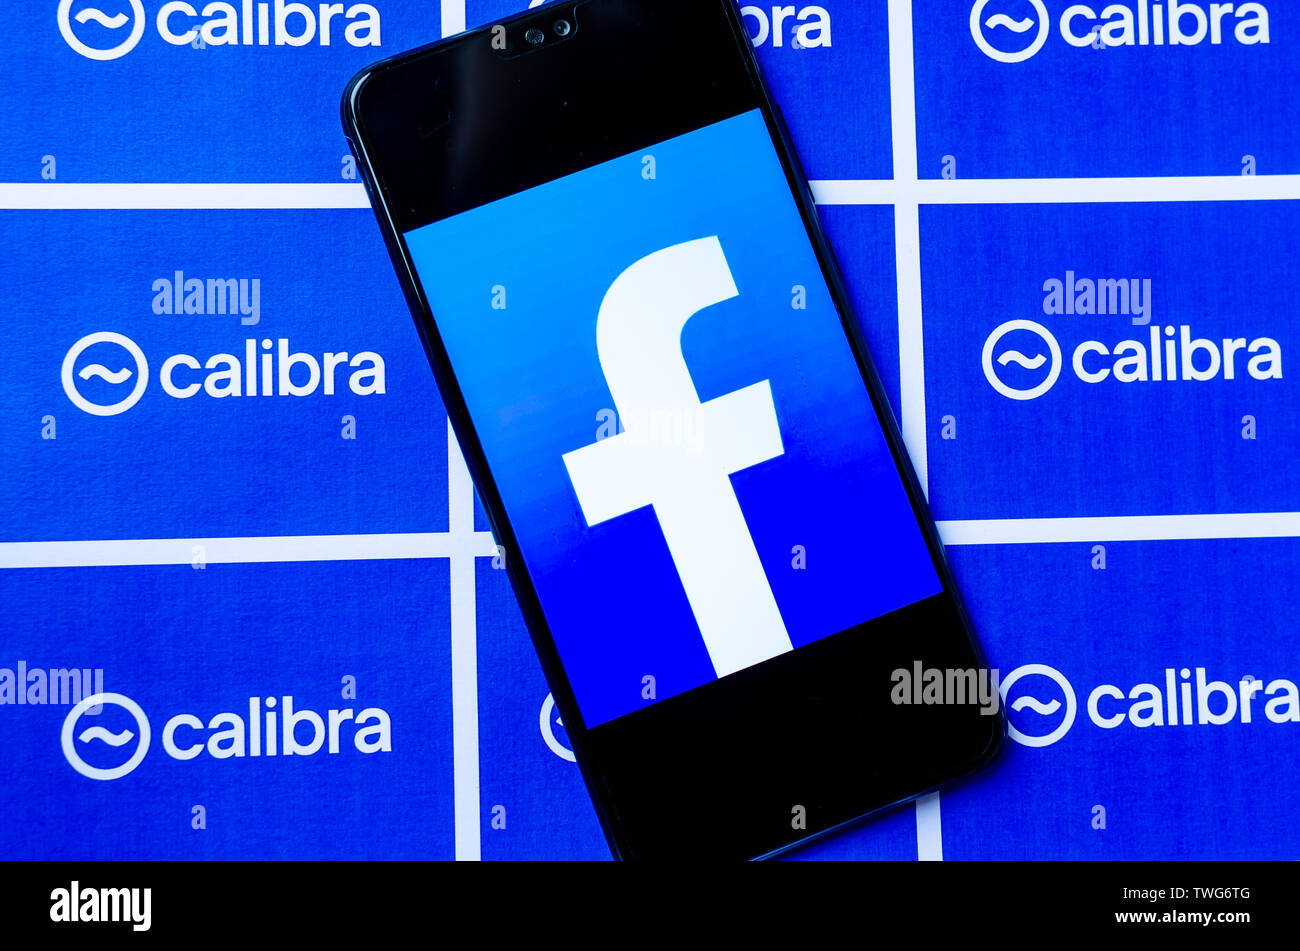 Facebook calibra - nuevo monedero digital para crypto moneda libra. Foto de smartphone con FB logo junto a broshure Calibra con logotipo. Foto de stock